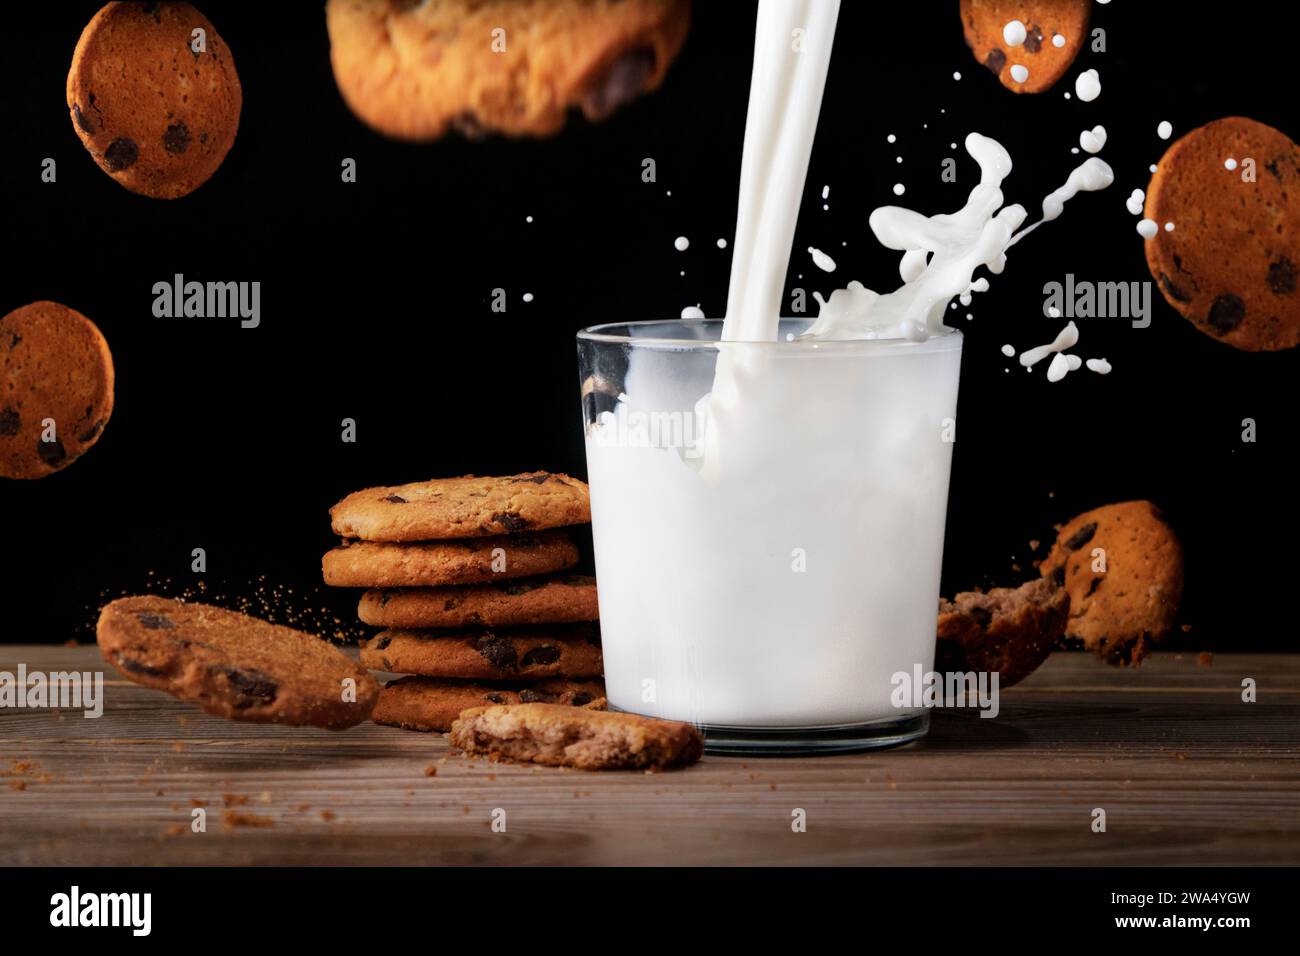 Ein Glas Milch mit leckeren Keksen. Milch wird mit Spritzern in eine Tasse gegeben. Kekse fliegen in der Luft und fallen mit Krümeln auf den Tisch. Schwarzer Hintergrund Stockfoto